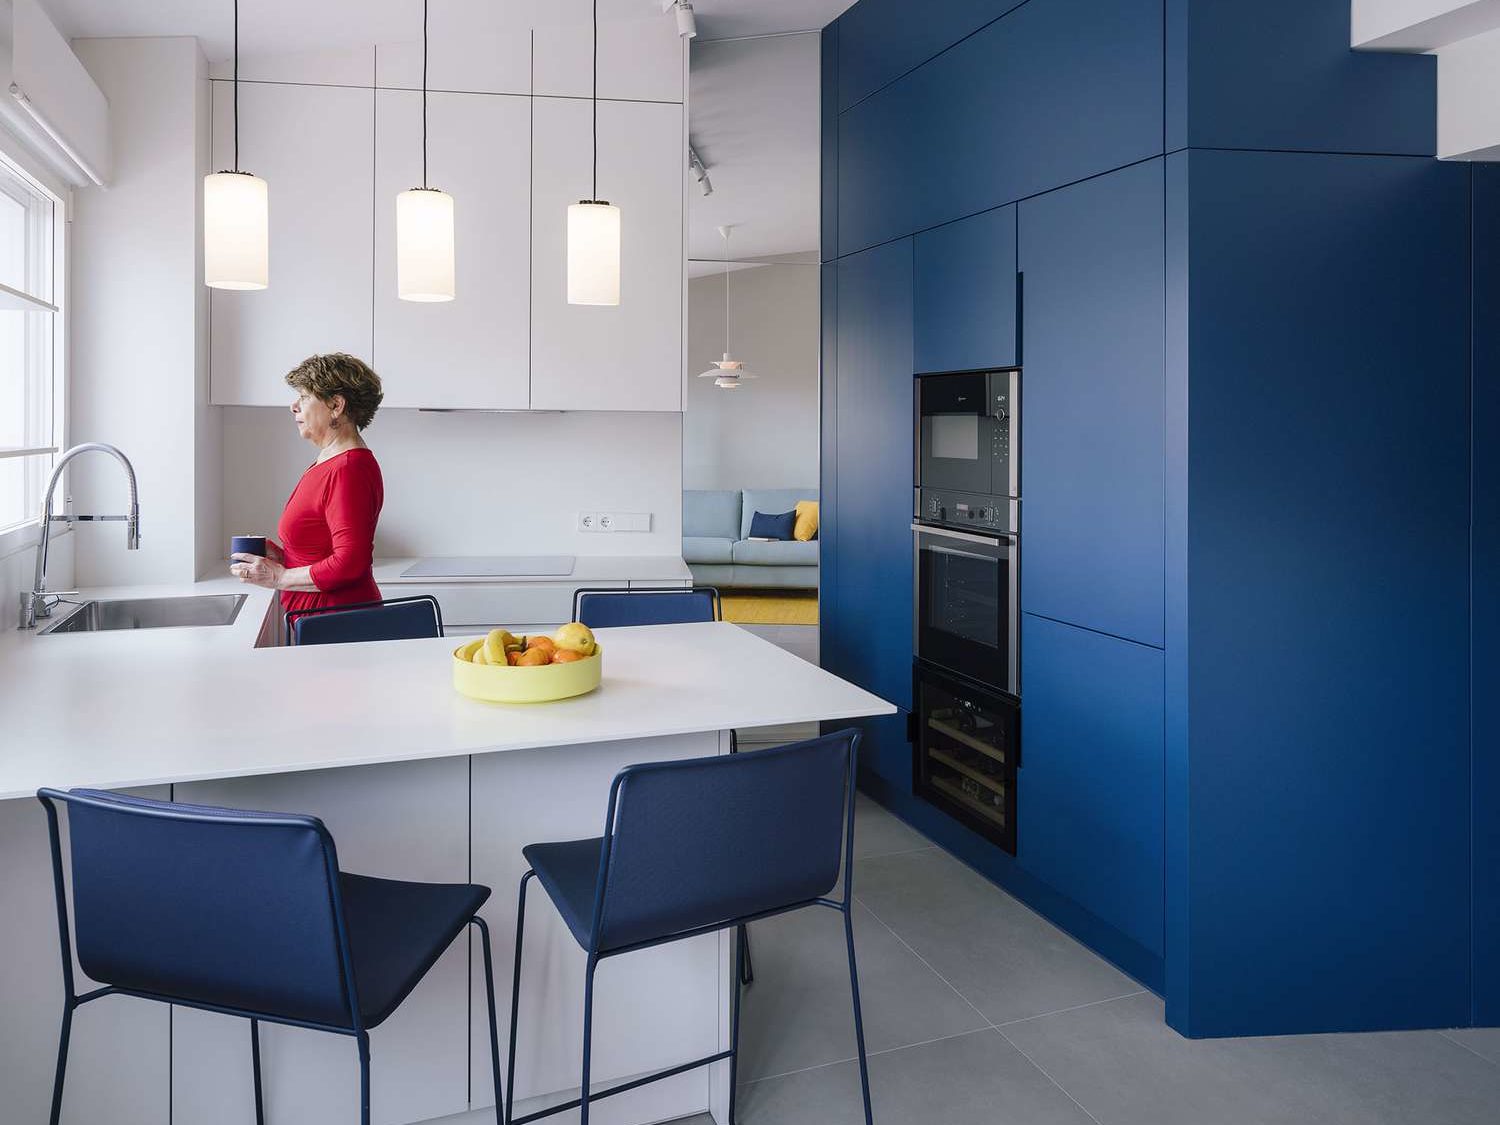 Modern kitchen with sleek blue cabinets.